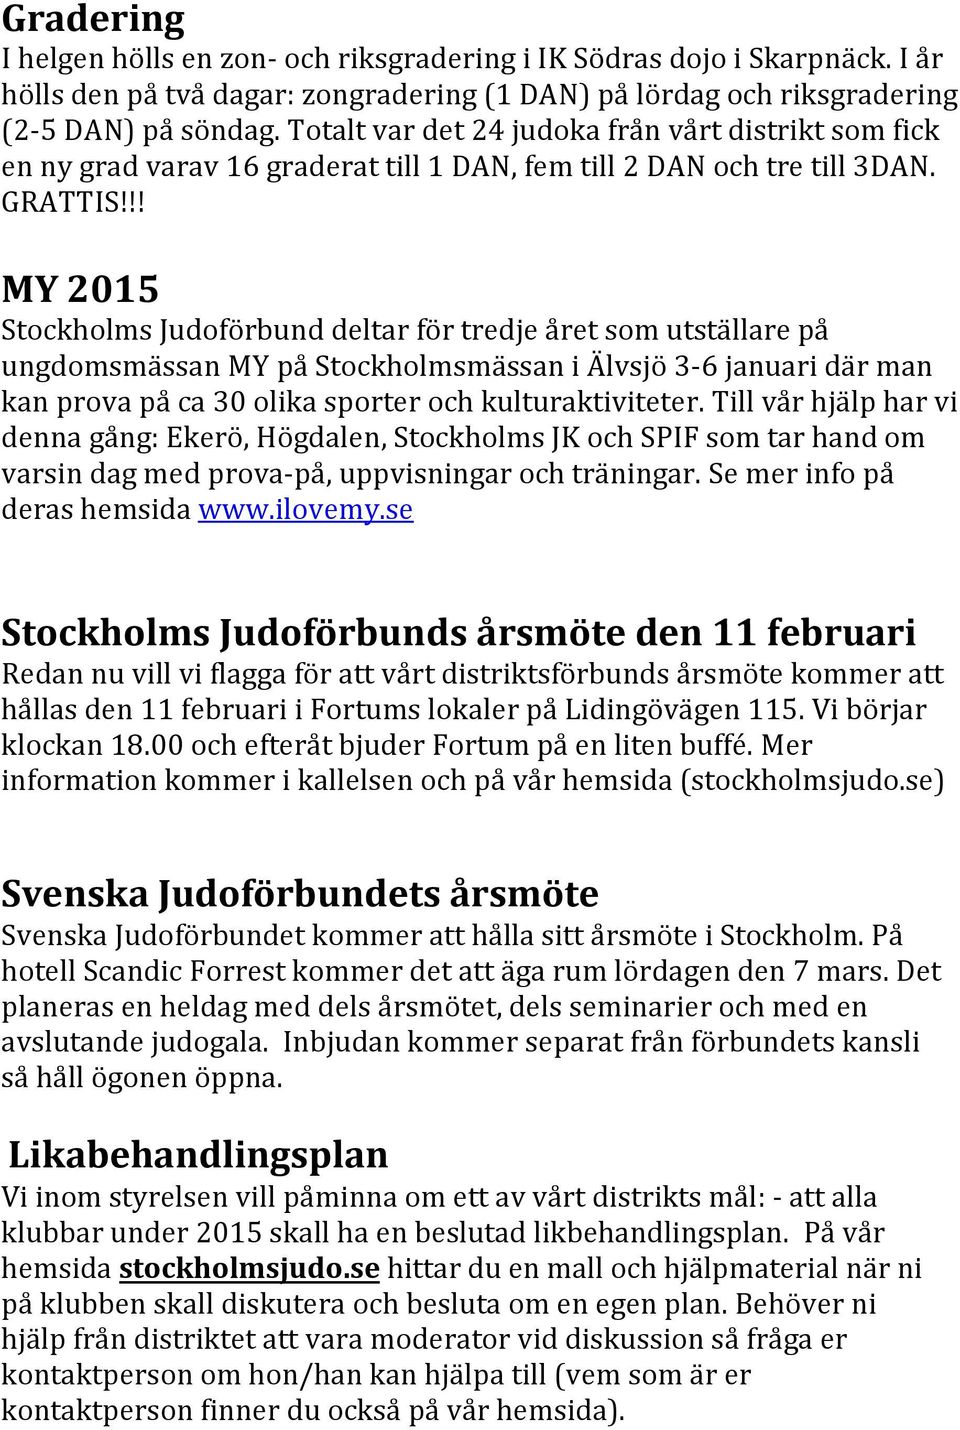 !! MY 2015 Stockholms Judoförbund deltar för tredje året som utställare på ungdomsmässan MY på Stockholmsmässan i Älvsjö 3-6 januari där man kan prova på ca 30 olika sporter och kulturaktiviteter.